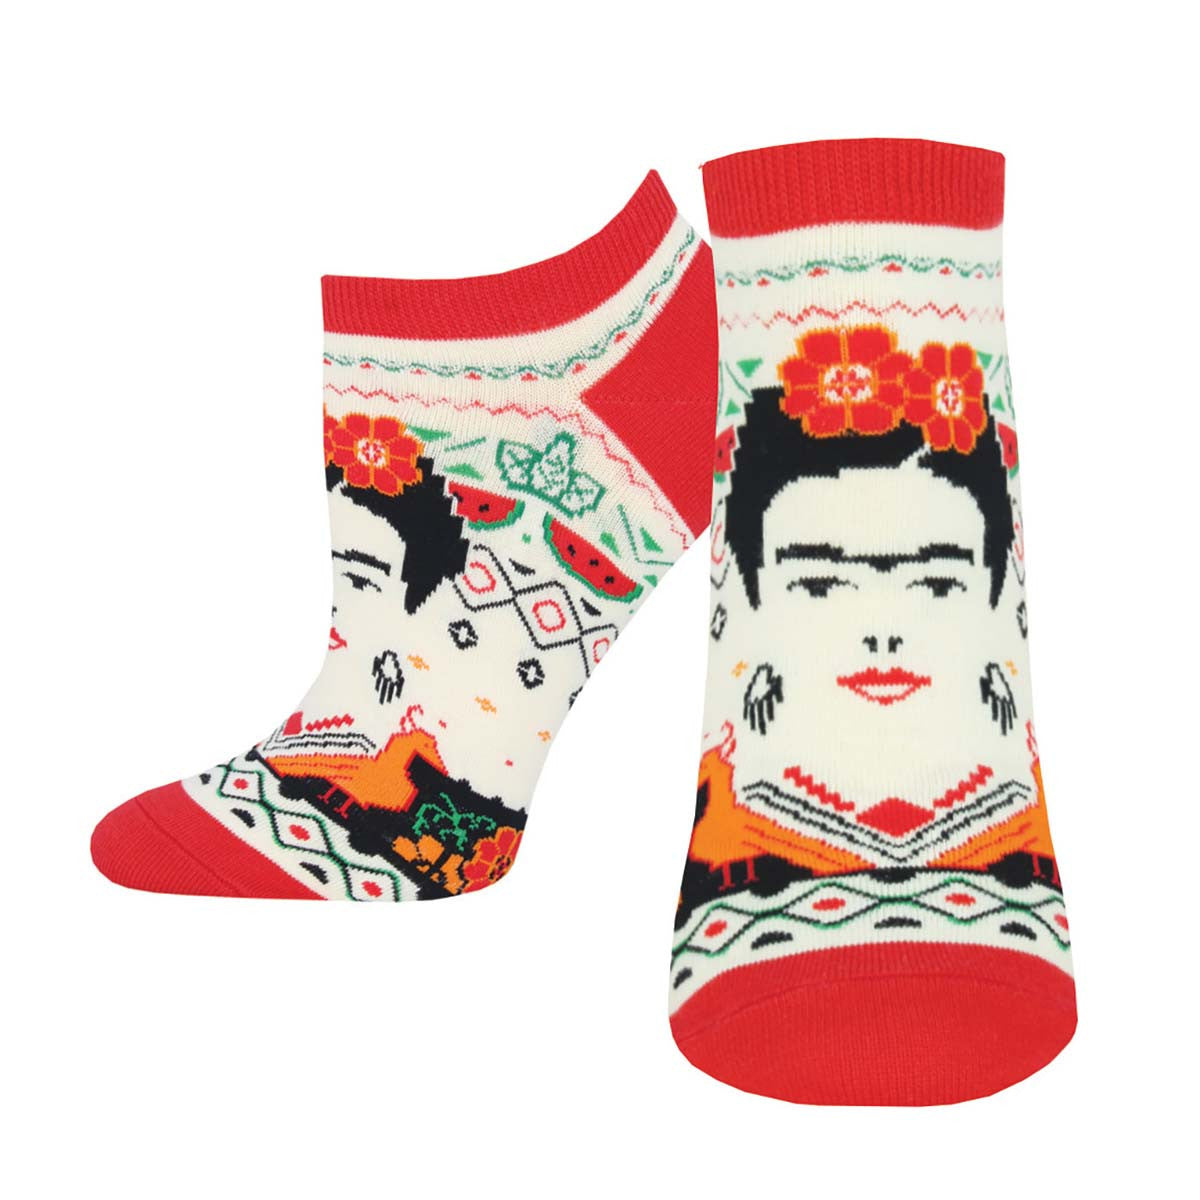 Frida Kahlo Women's Ankle Socks